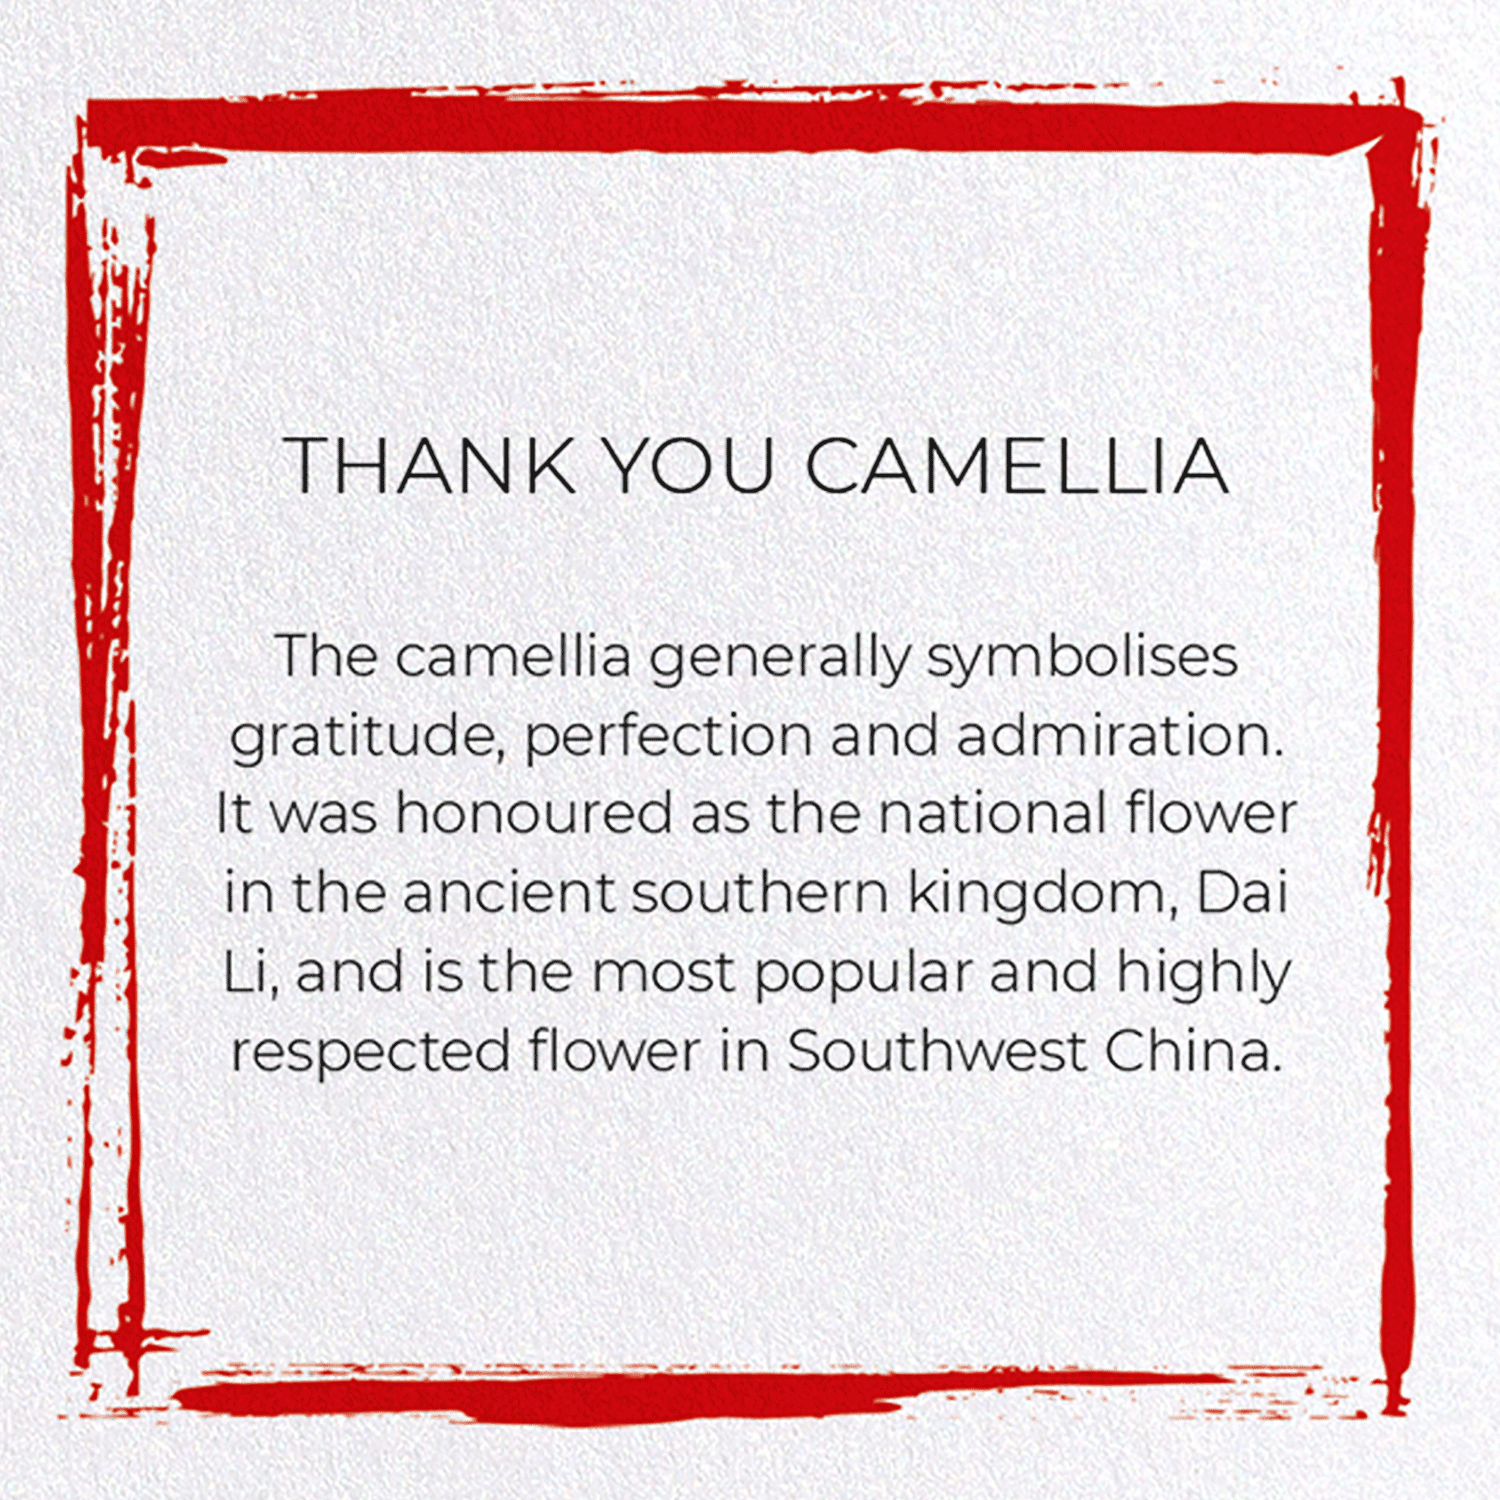 THANK YOU CAMELLIA